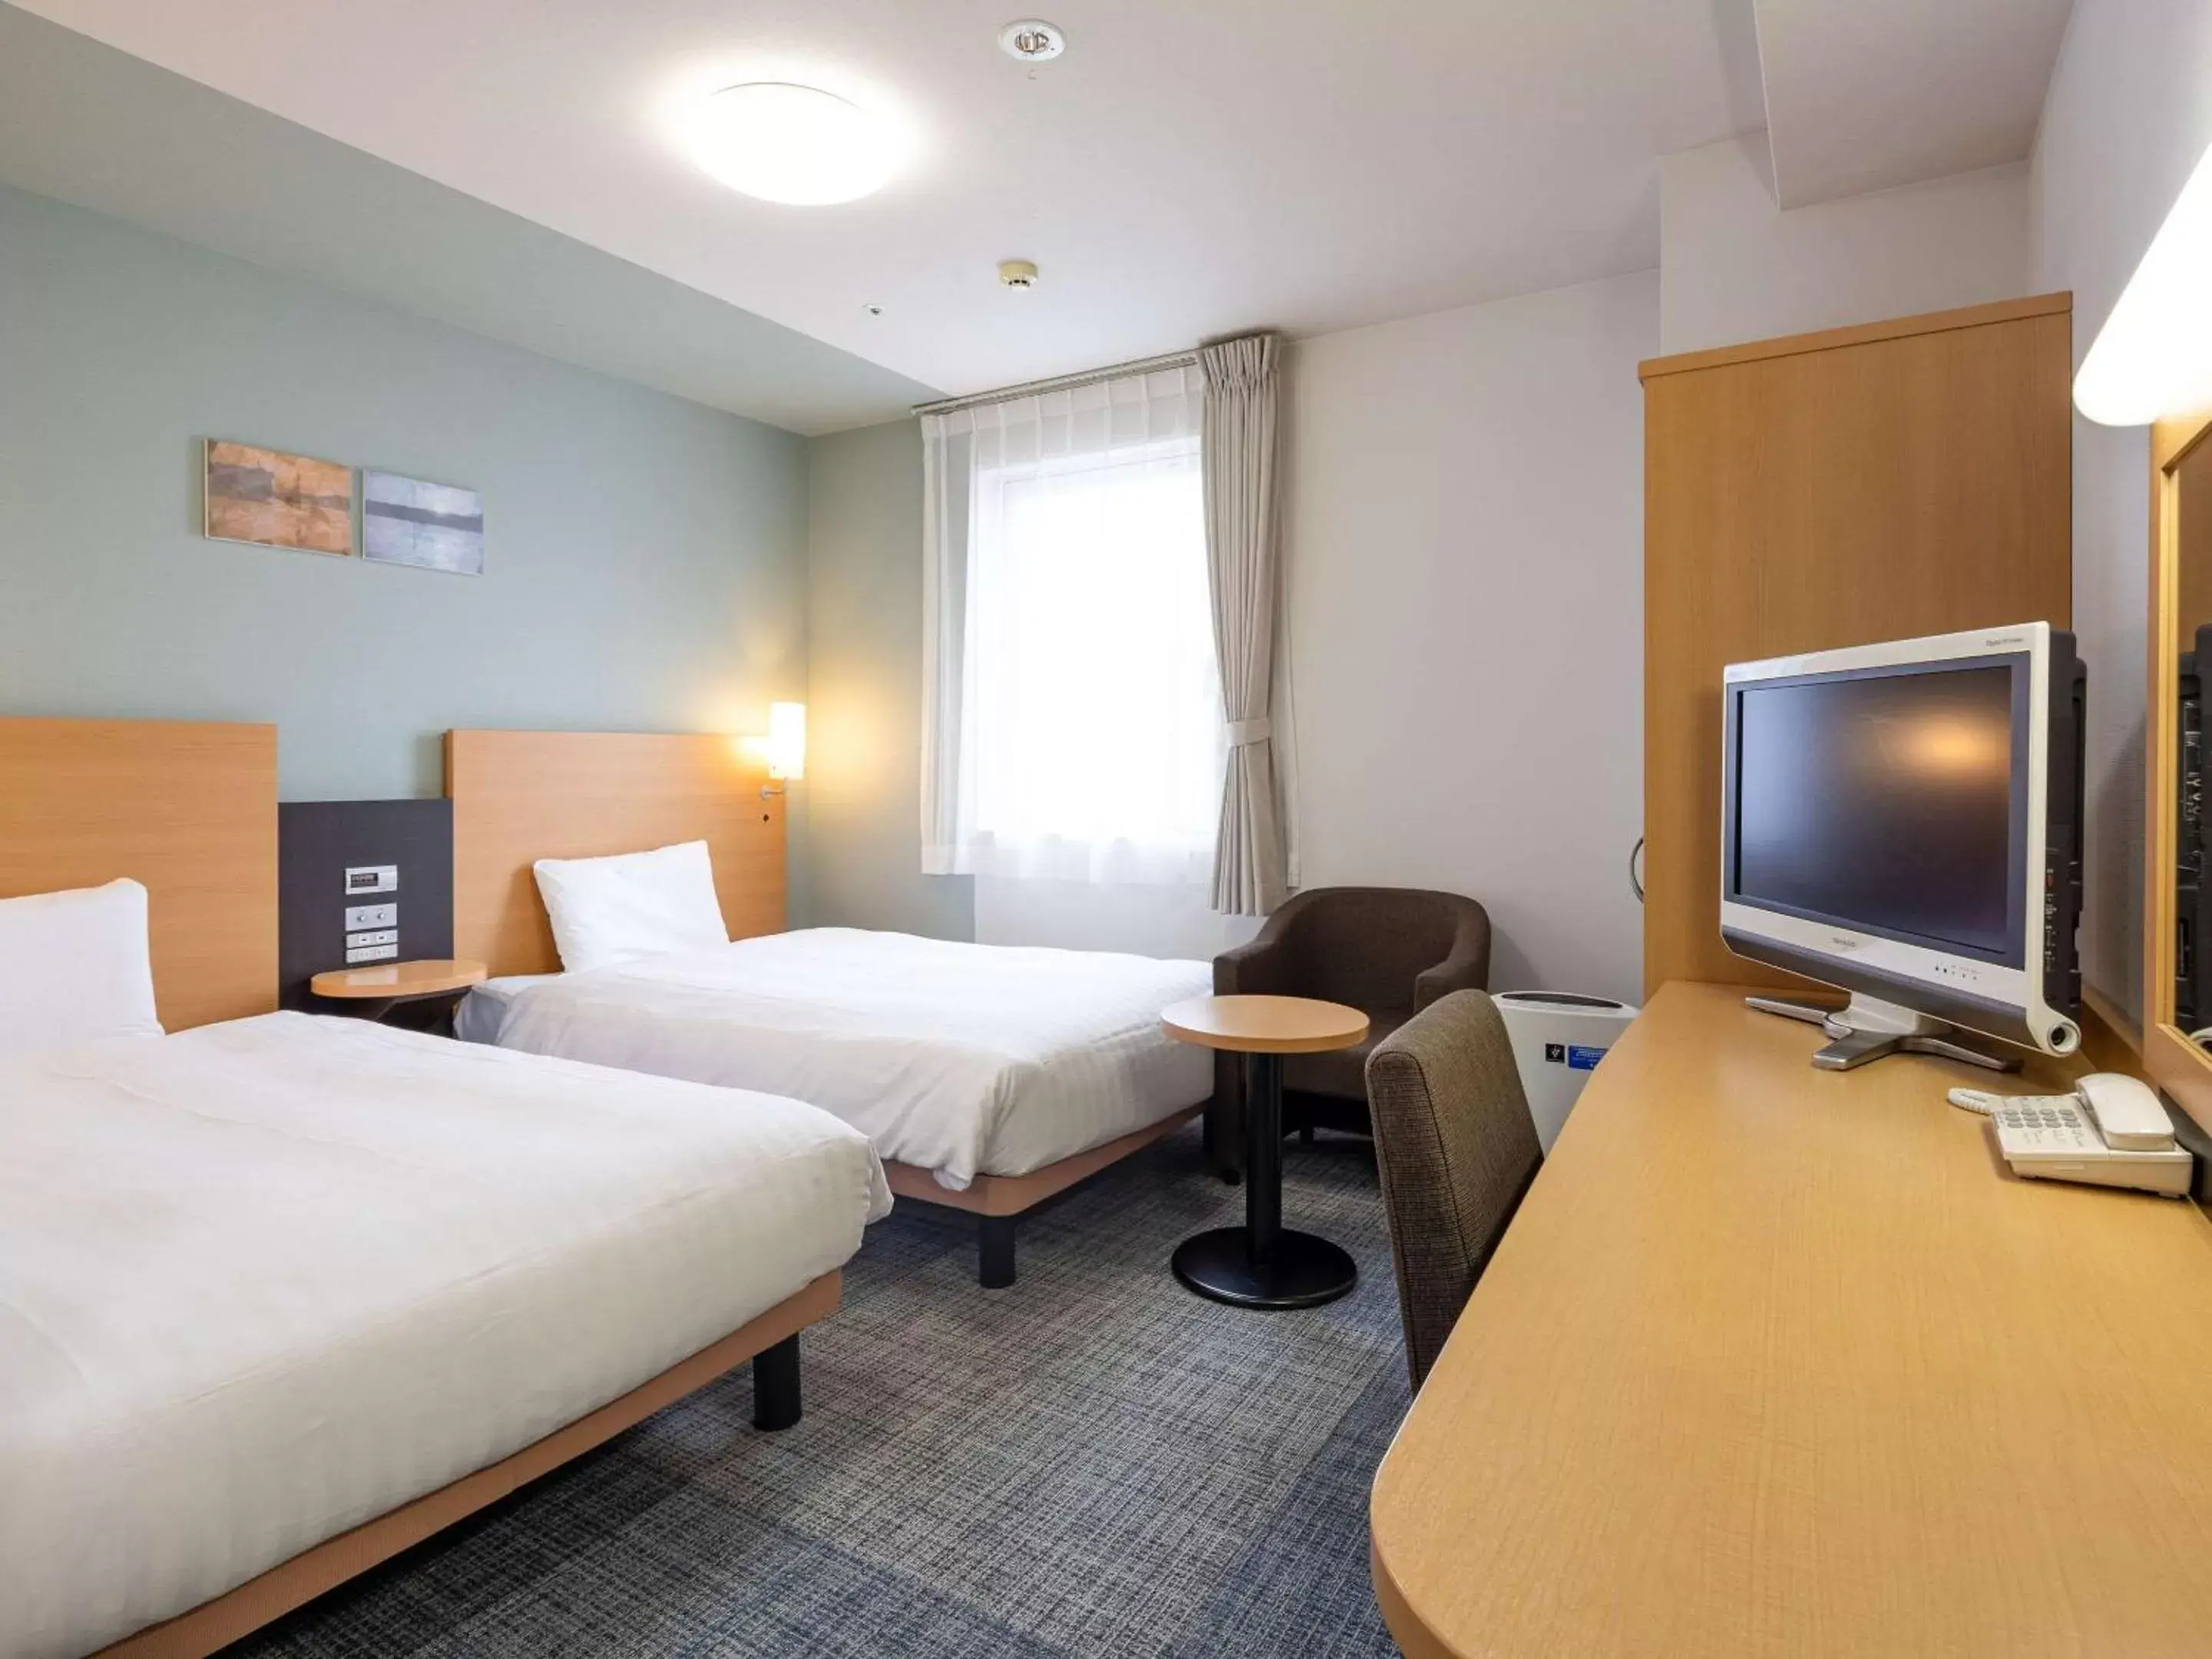 Bedroom, Bed in Comfort Hotel Kure